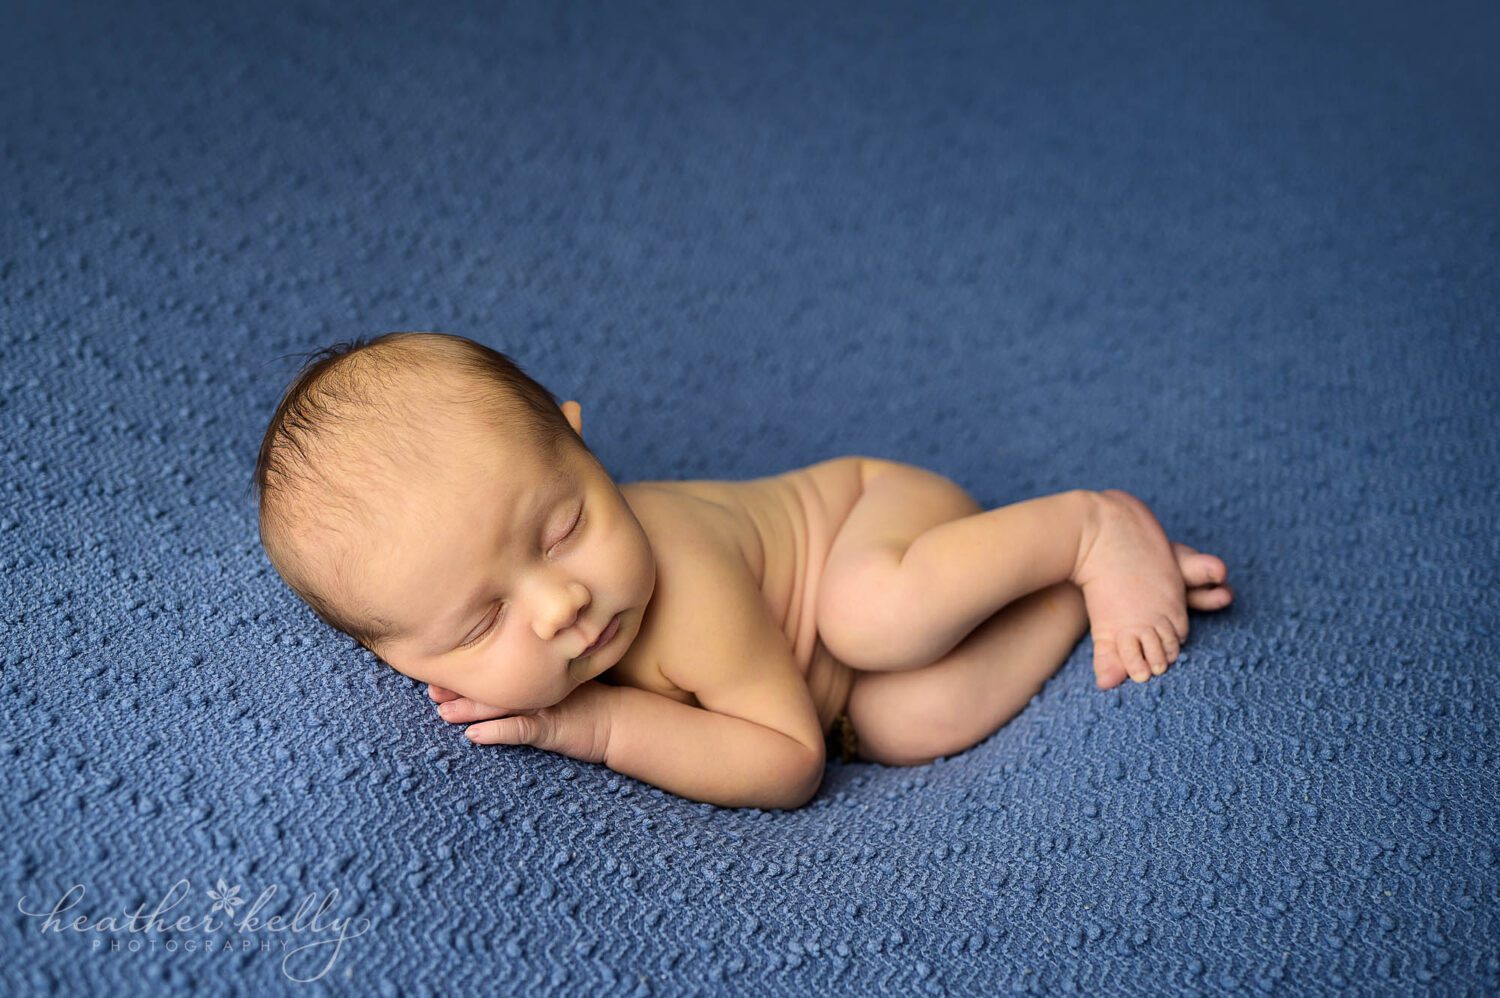 a newborn boy is posed on a blue blanket. He is sleeping 